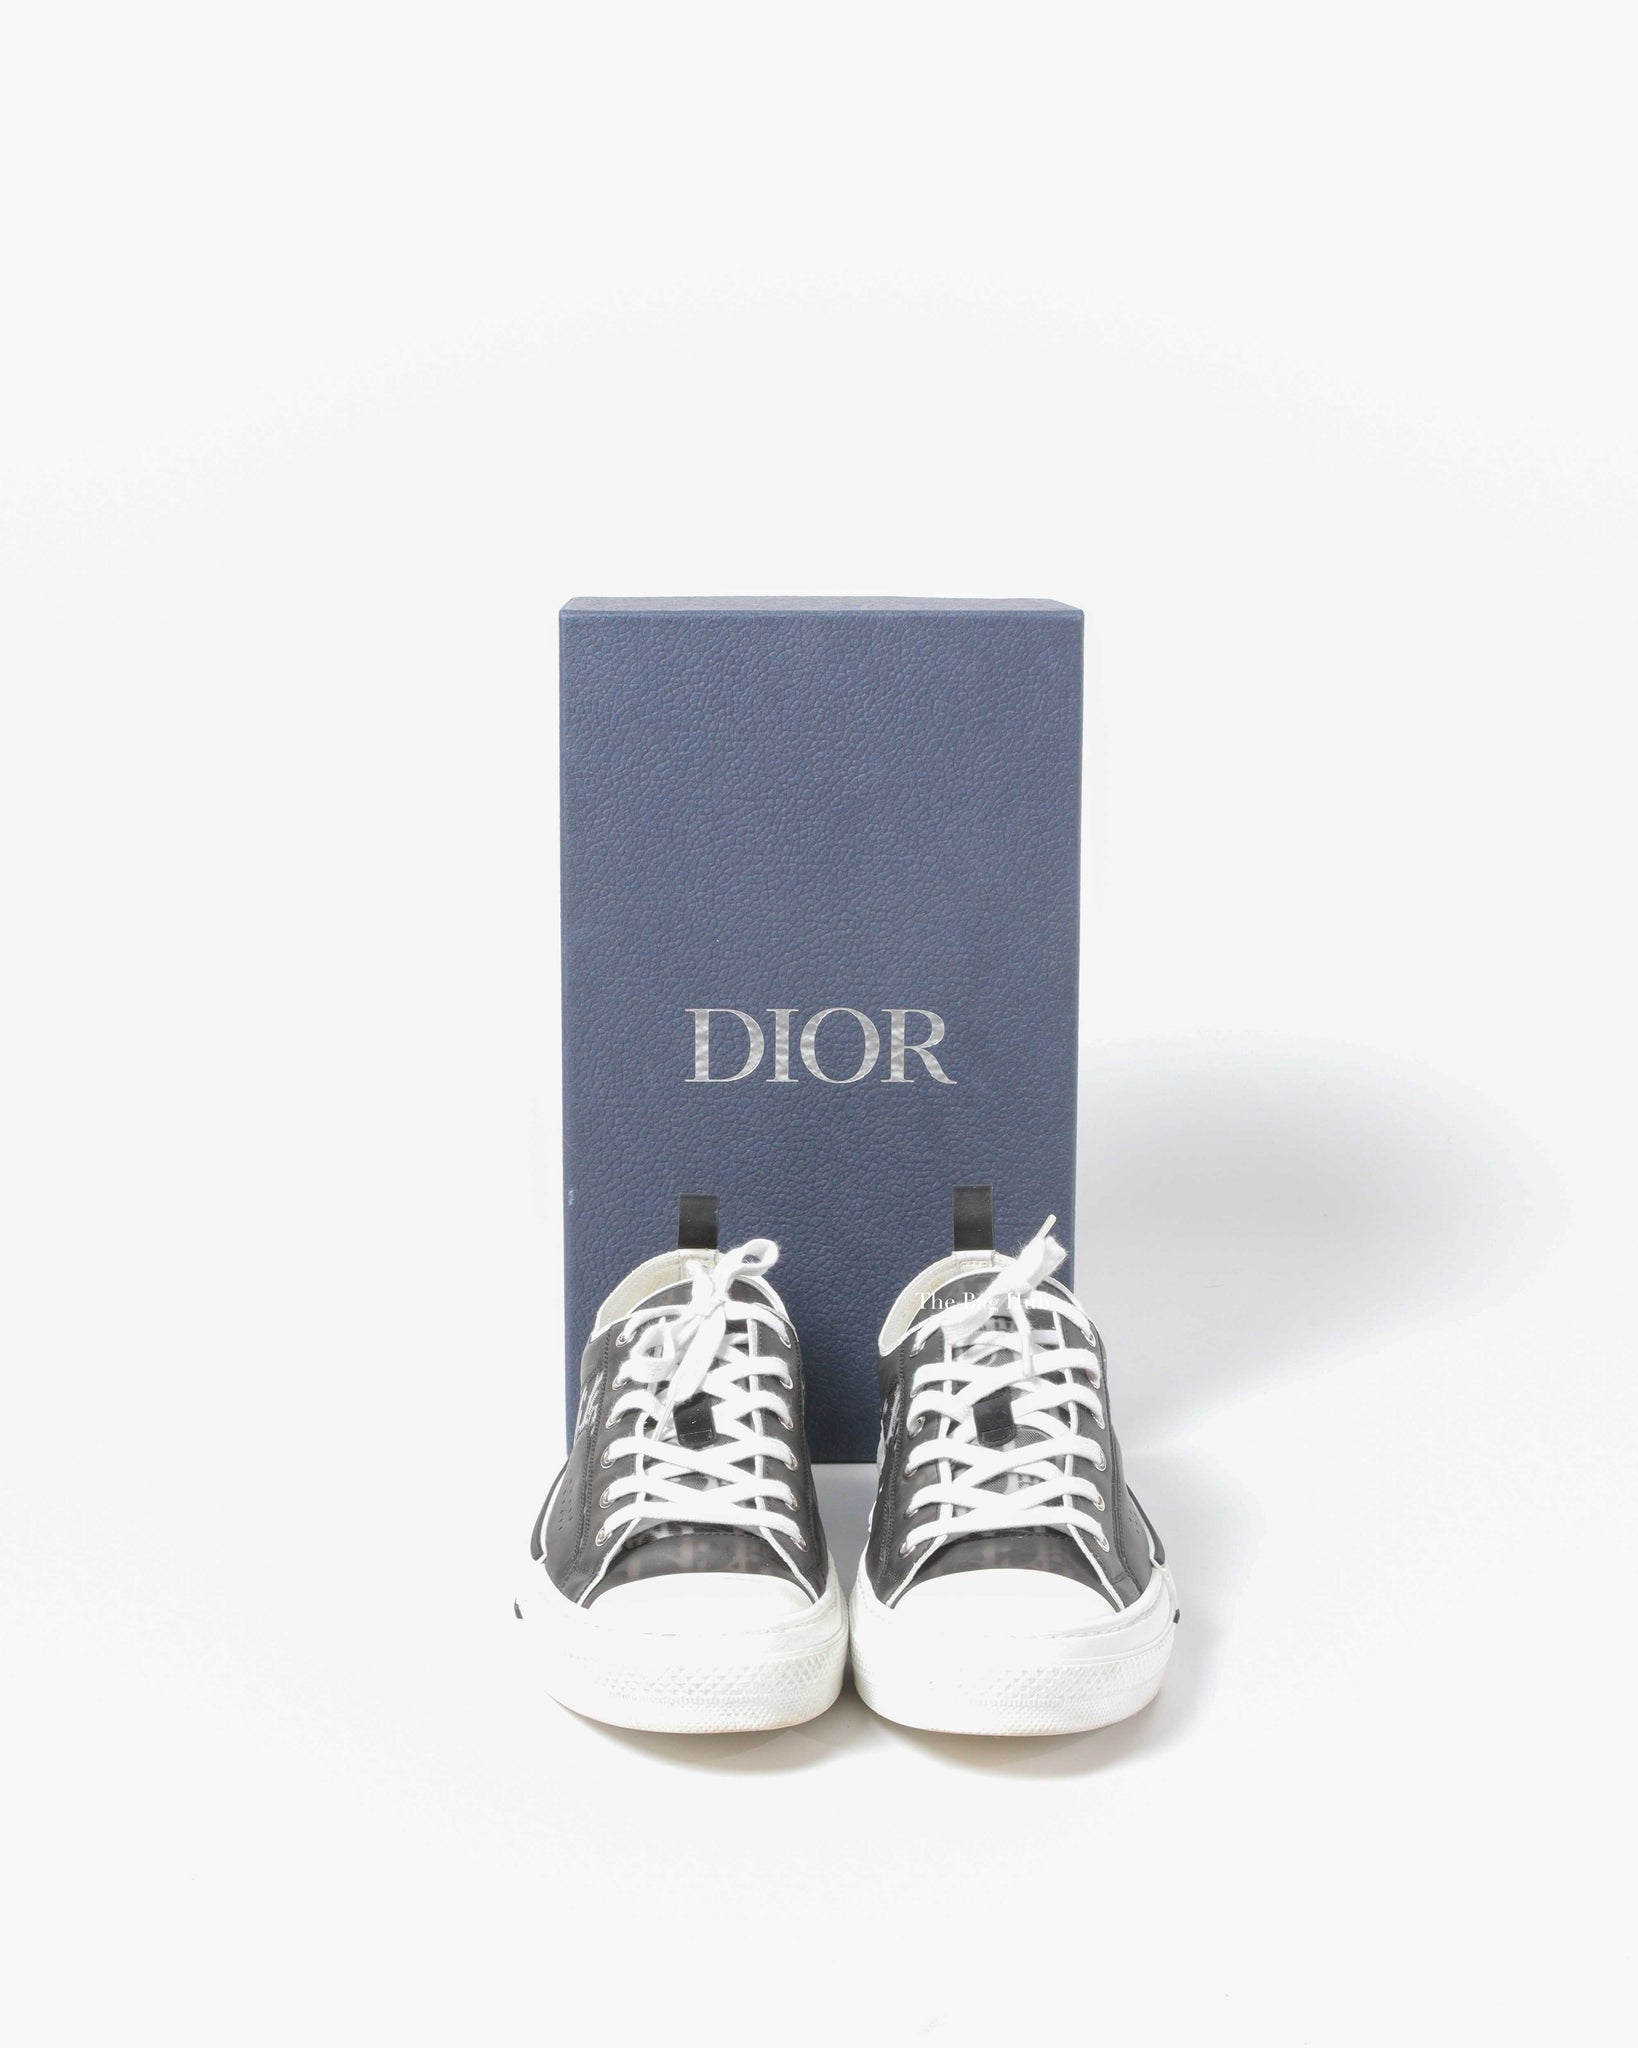 2021 Dior Shoes B23 B24 Oblique Technology Canvas Designer